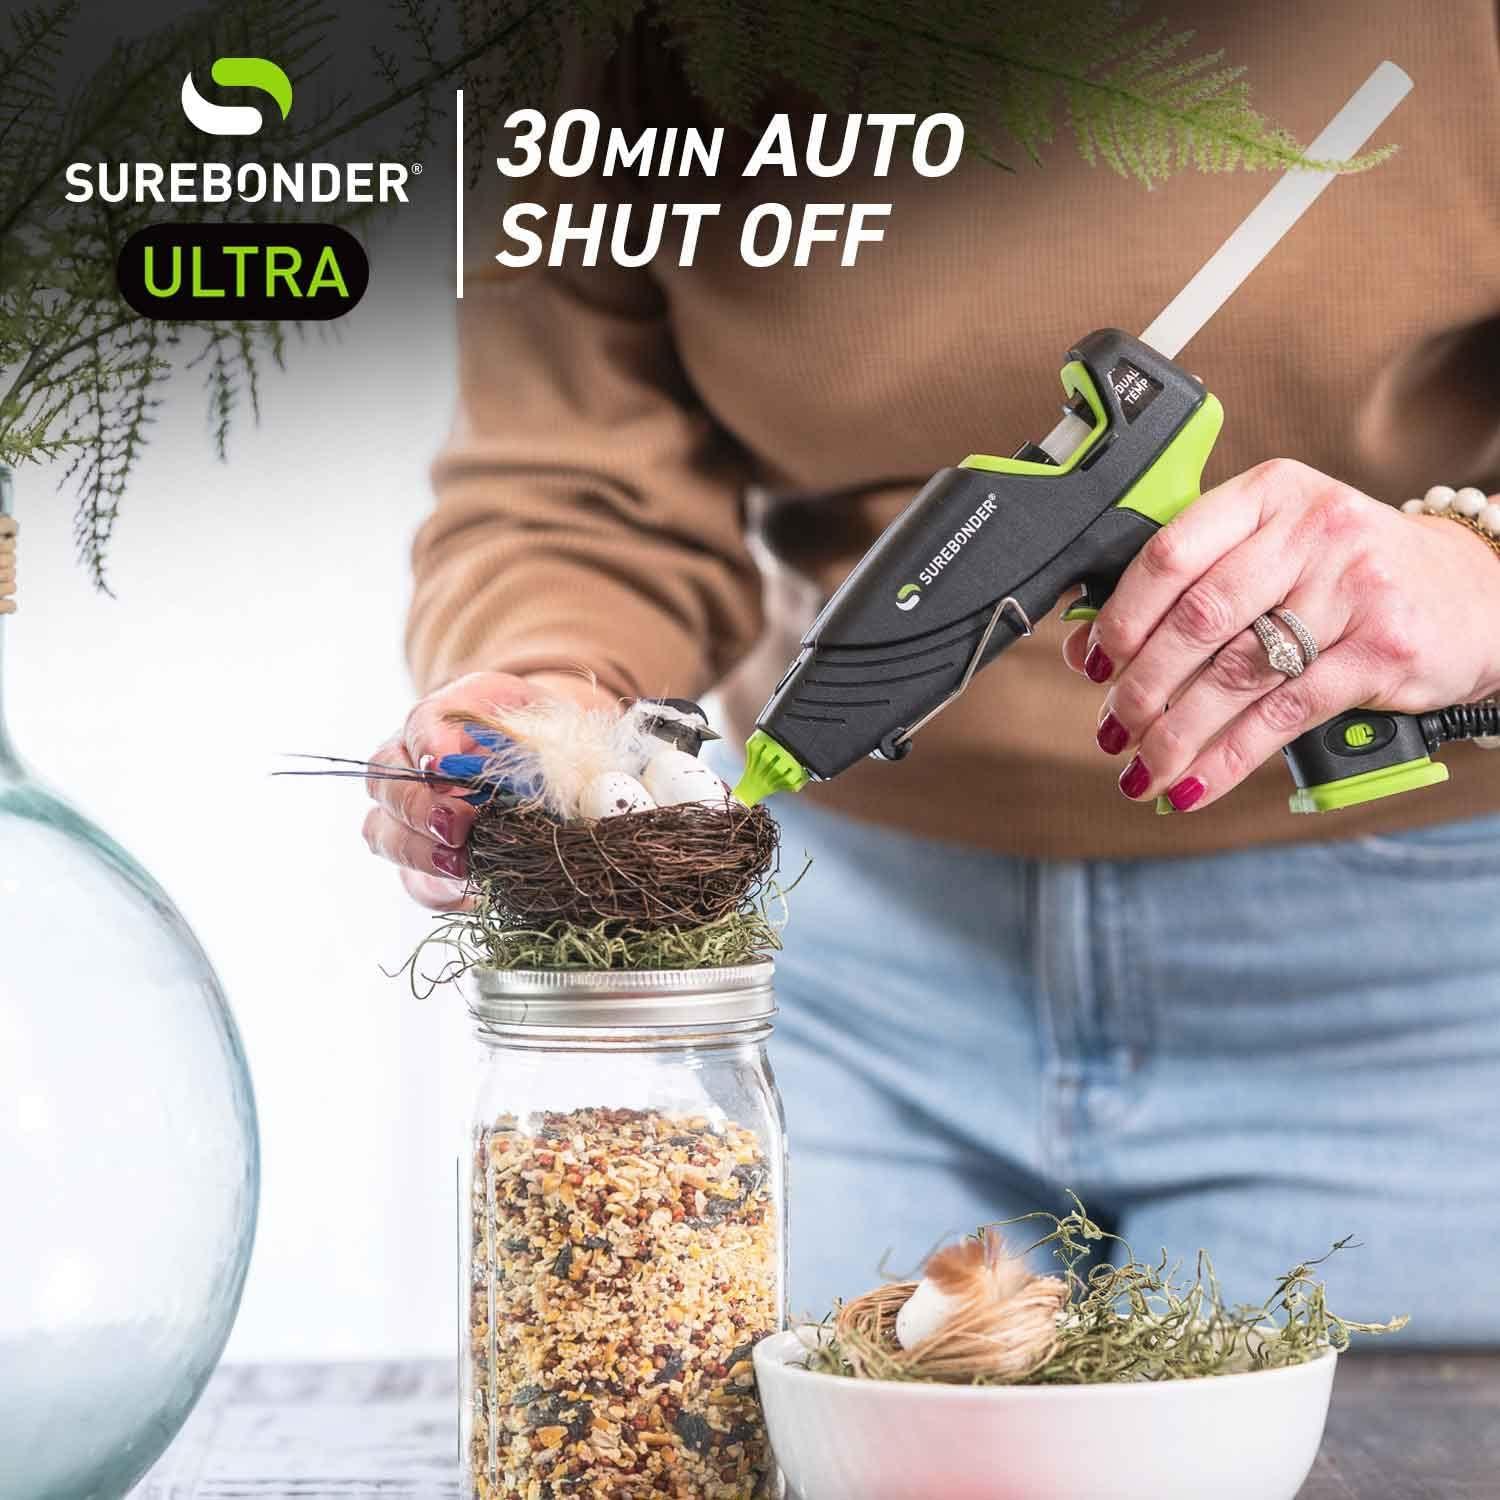 Surebonder Essentials Series Mini Dual Temperature Hot Glue Gun